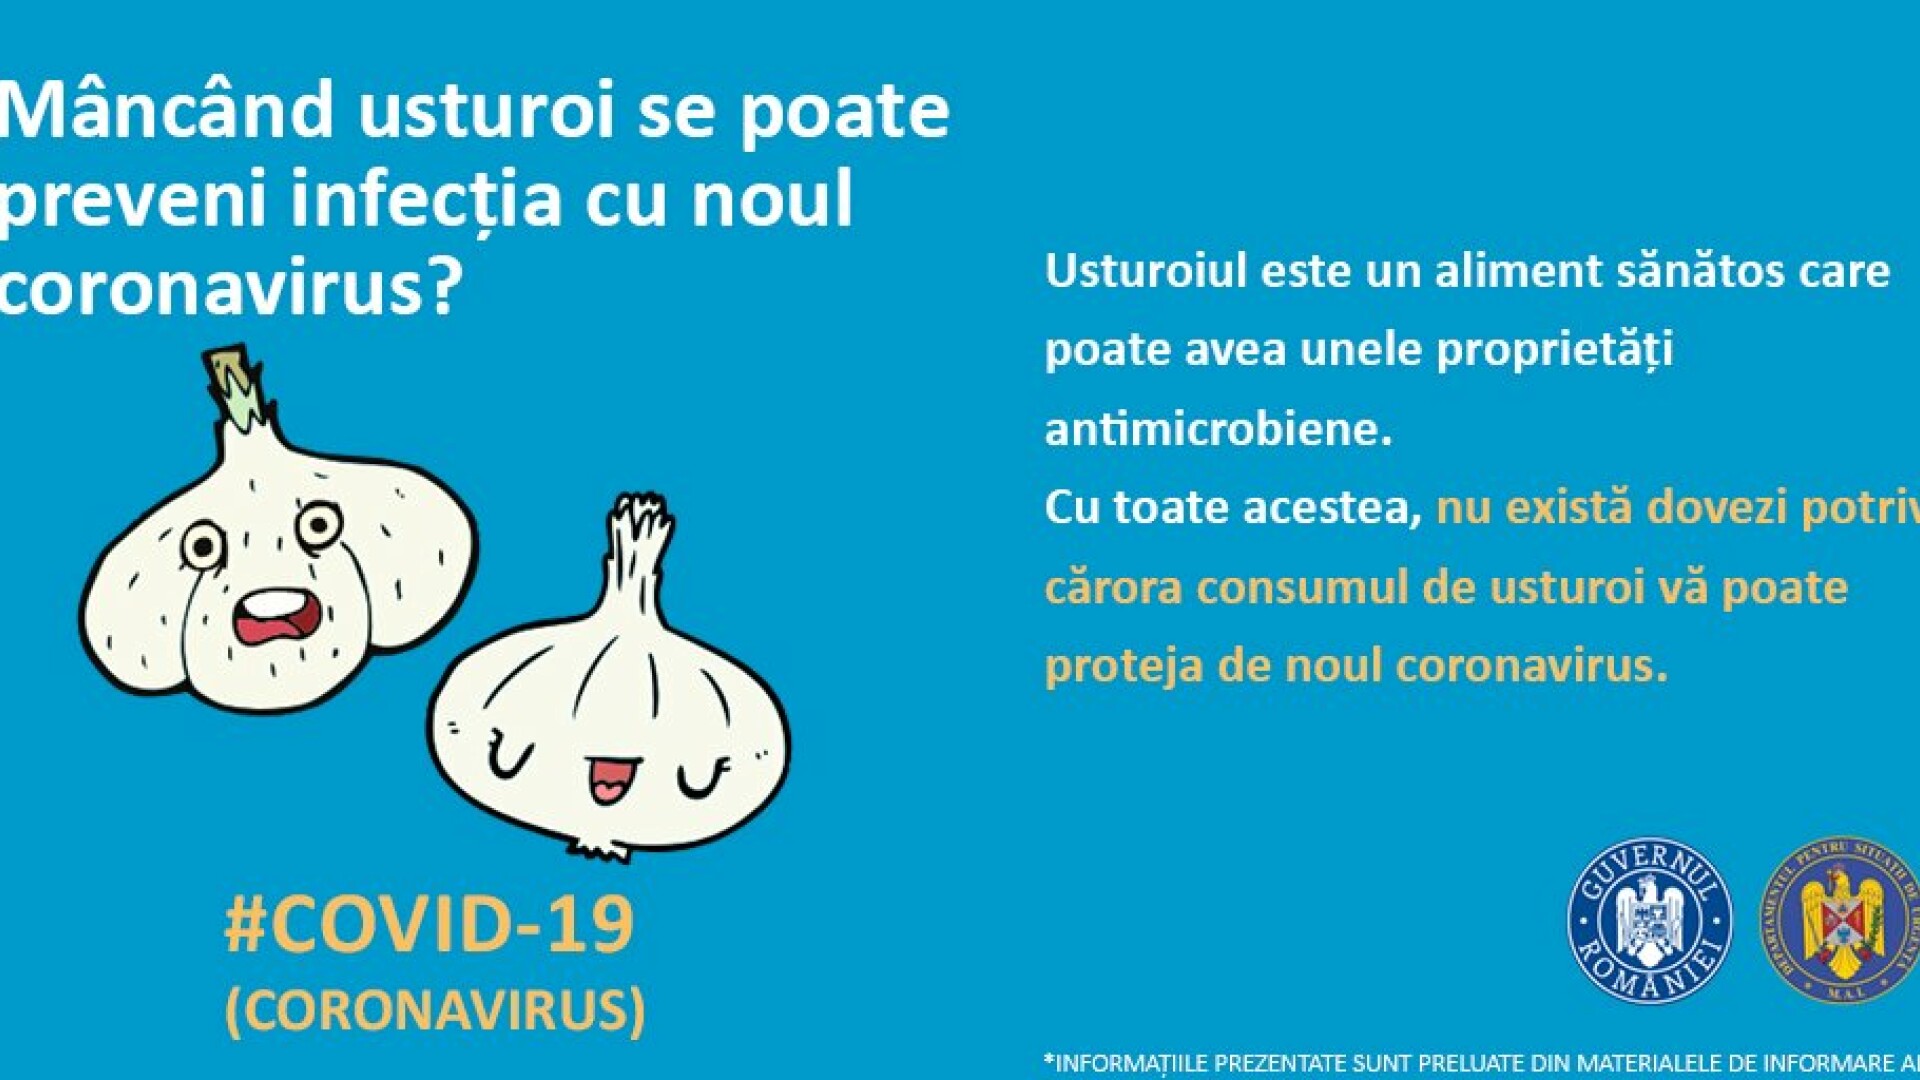 MAI informează că usturoiul nu vindecă noul coronavirus